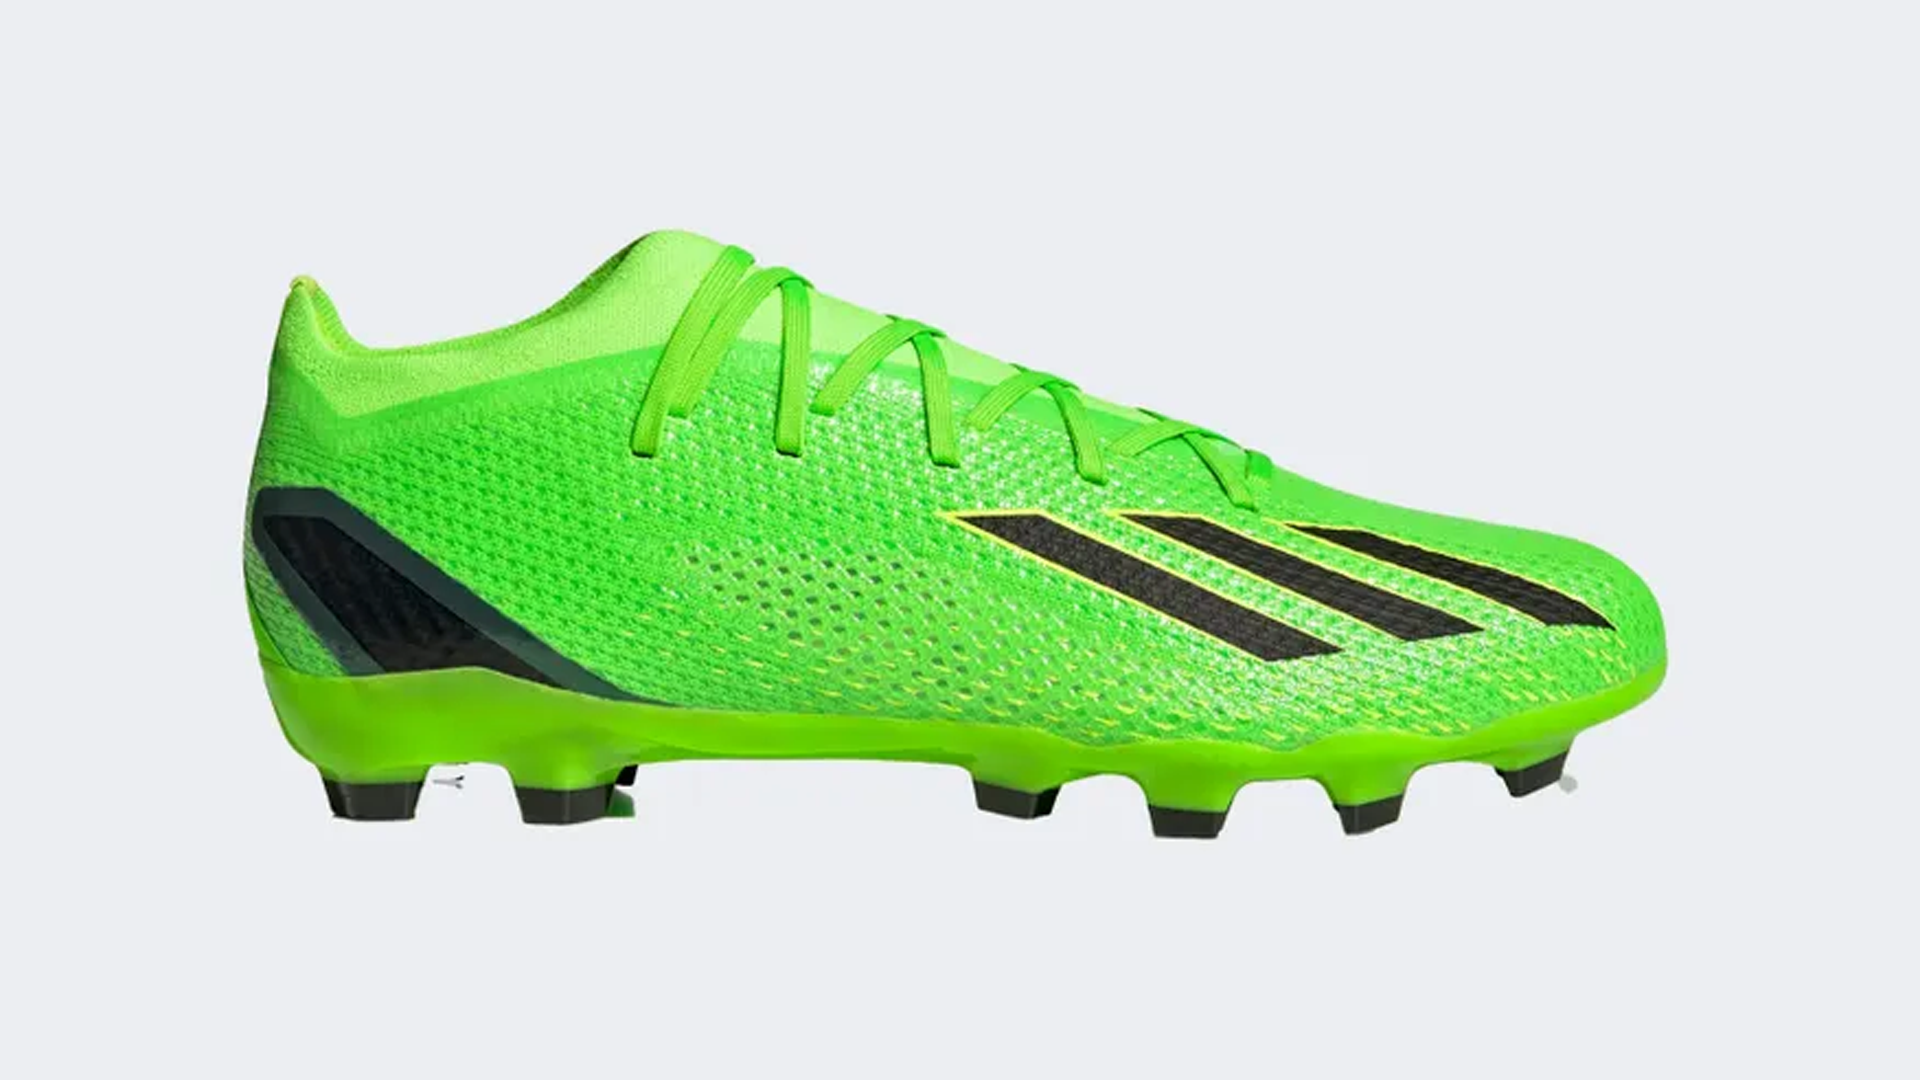 adidas Football Boots